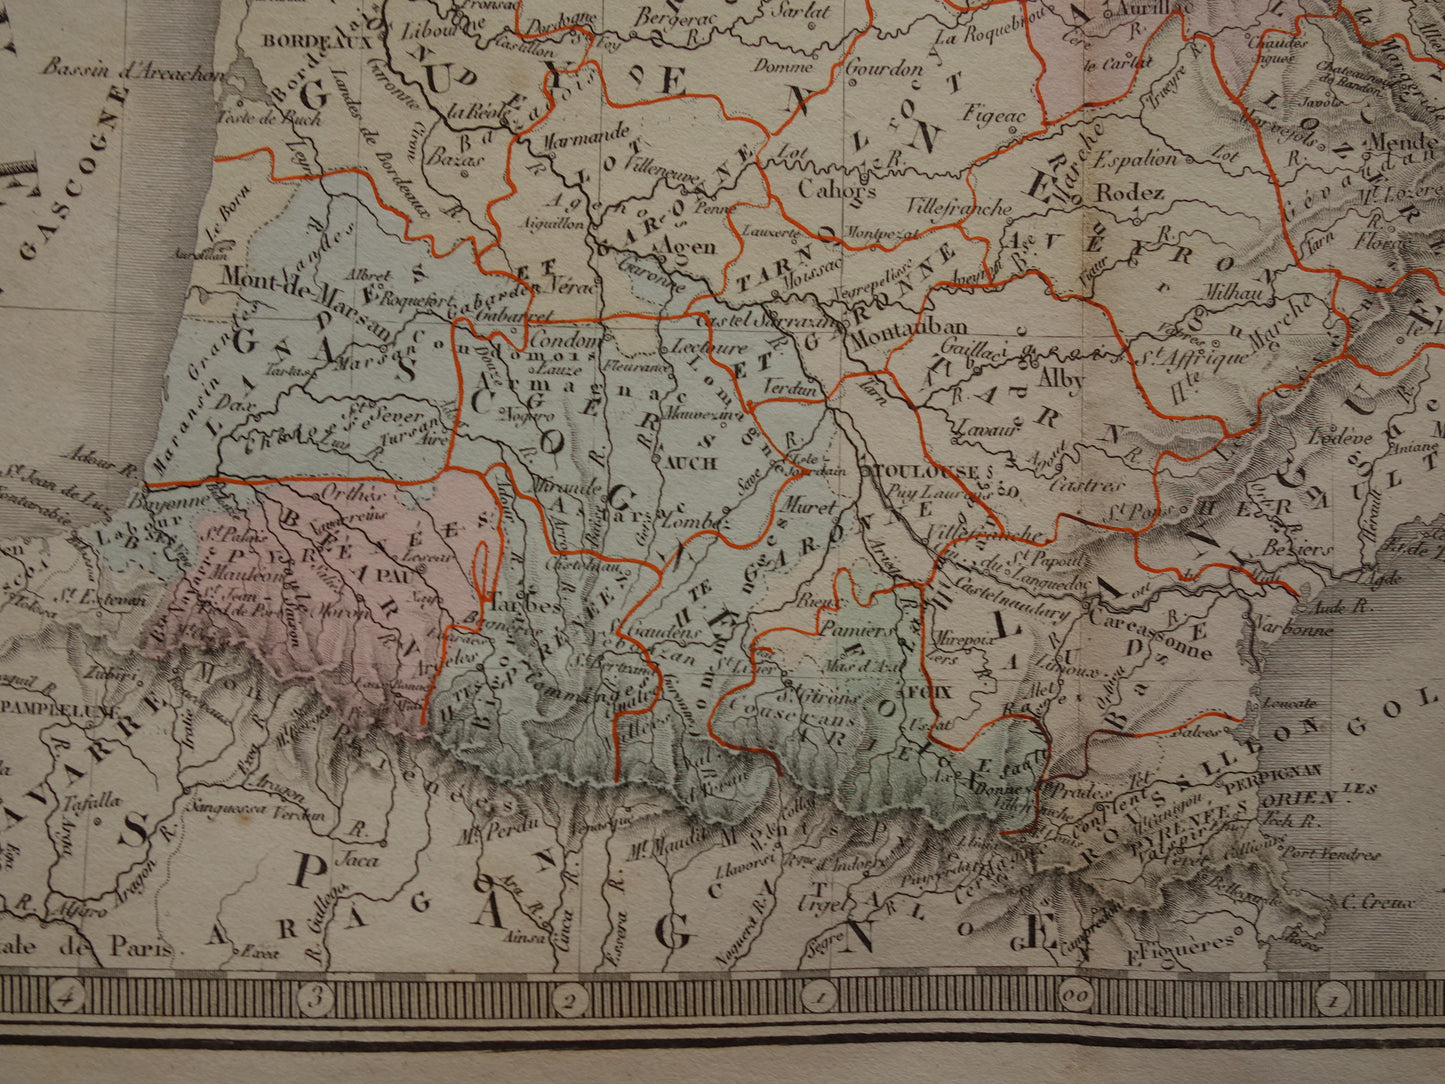 FRANKRIJK grote oude Franse kaart van Frankrijk in 1789 originele antieke handgekleurde landkaart poster start Franse Revolutie